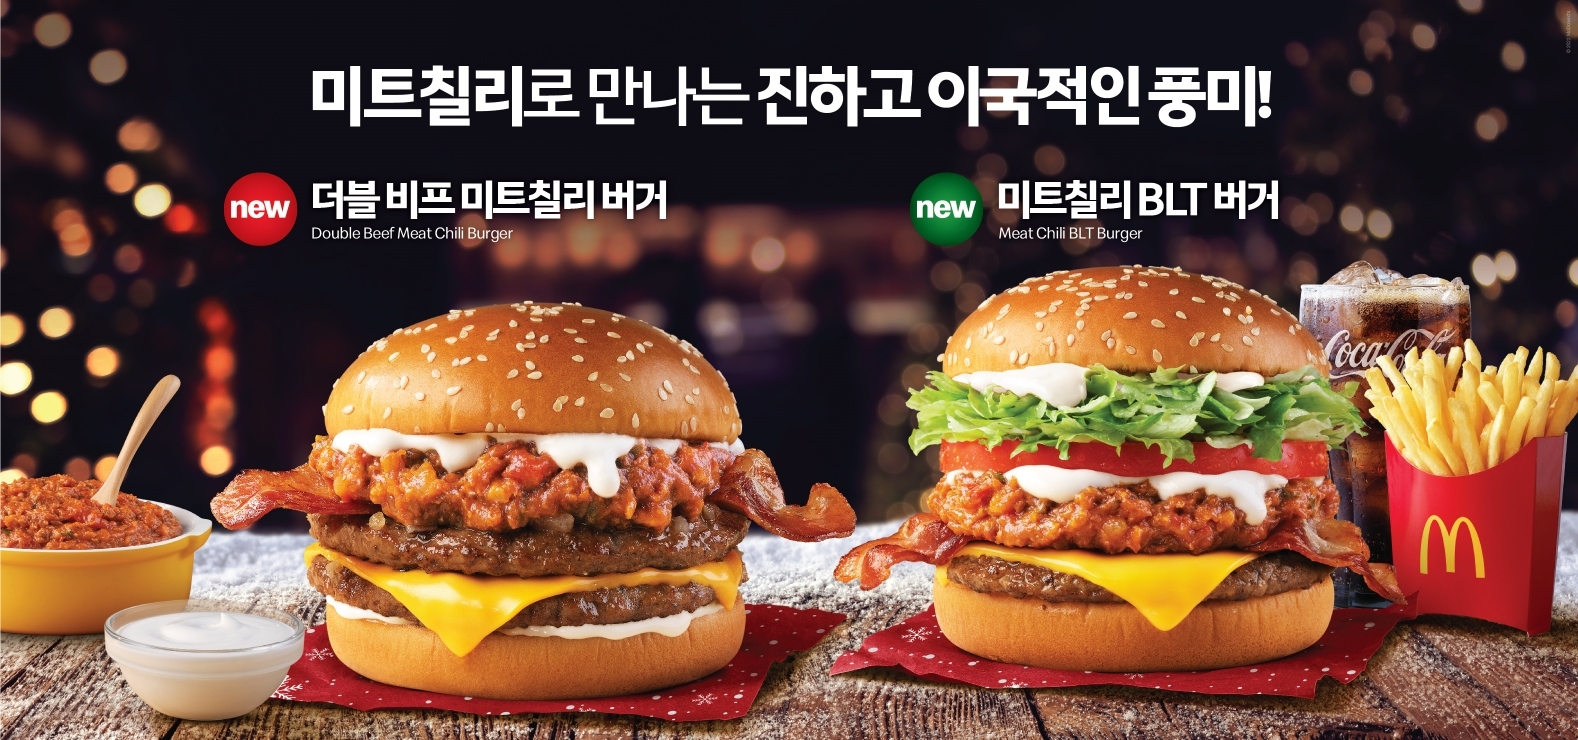 [생활경제 이슈] 맥도날드 ‘미트칠리 버거’ 출시 外